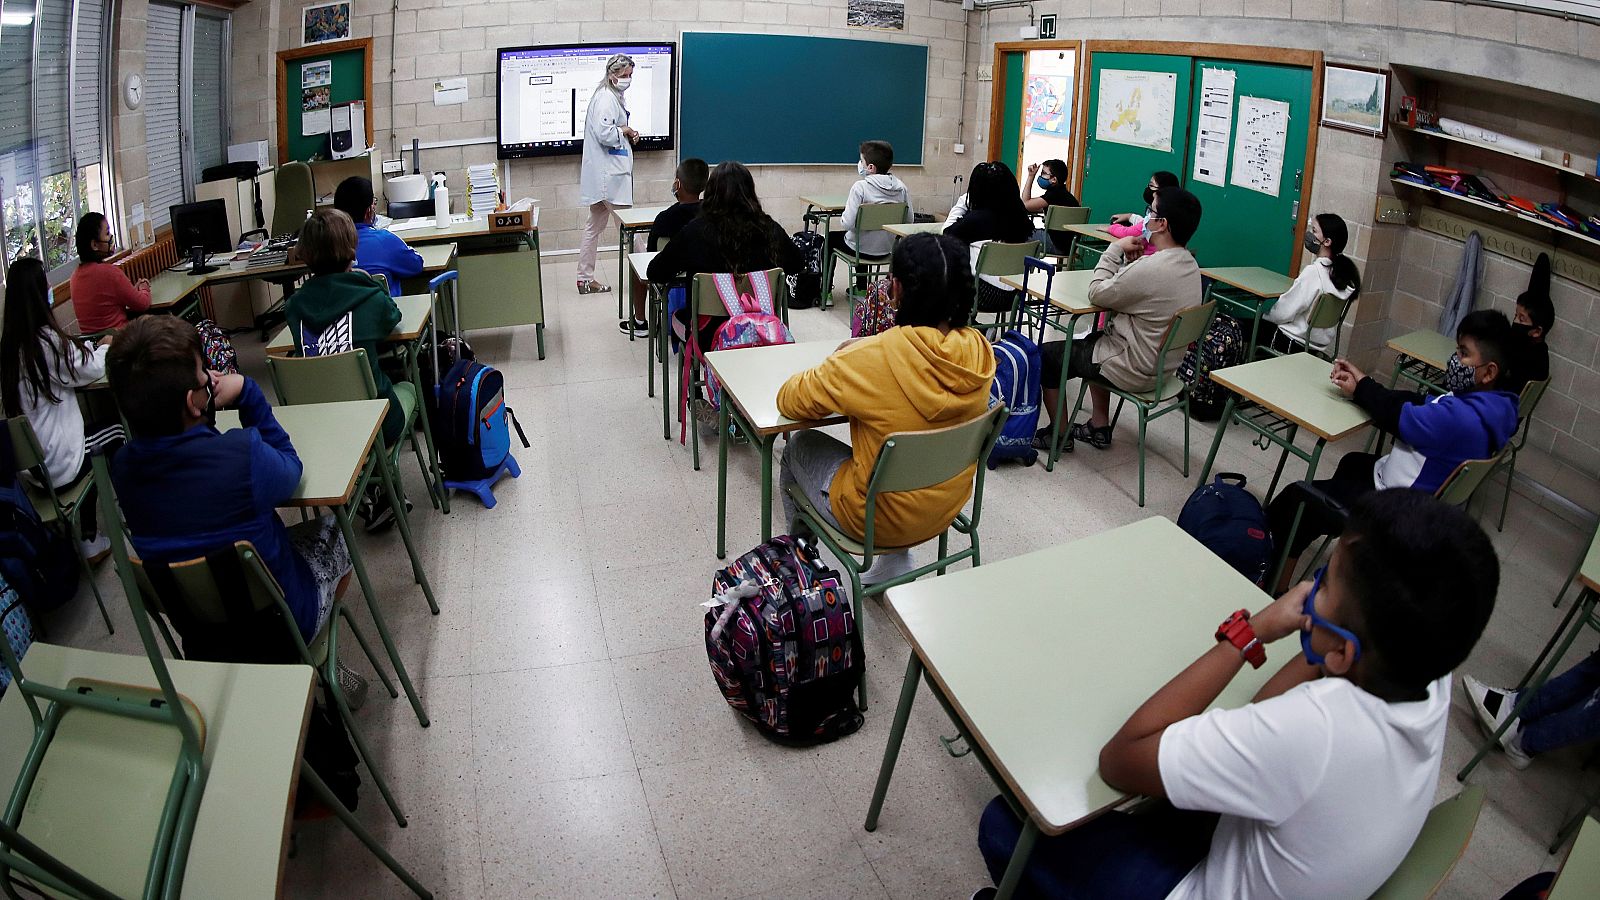 Coronavirus - Ignacio de Blas, epidemiólogo: "El riesgo cero en las aulas no existe" - RTVE.es